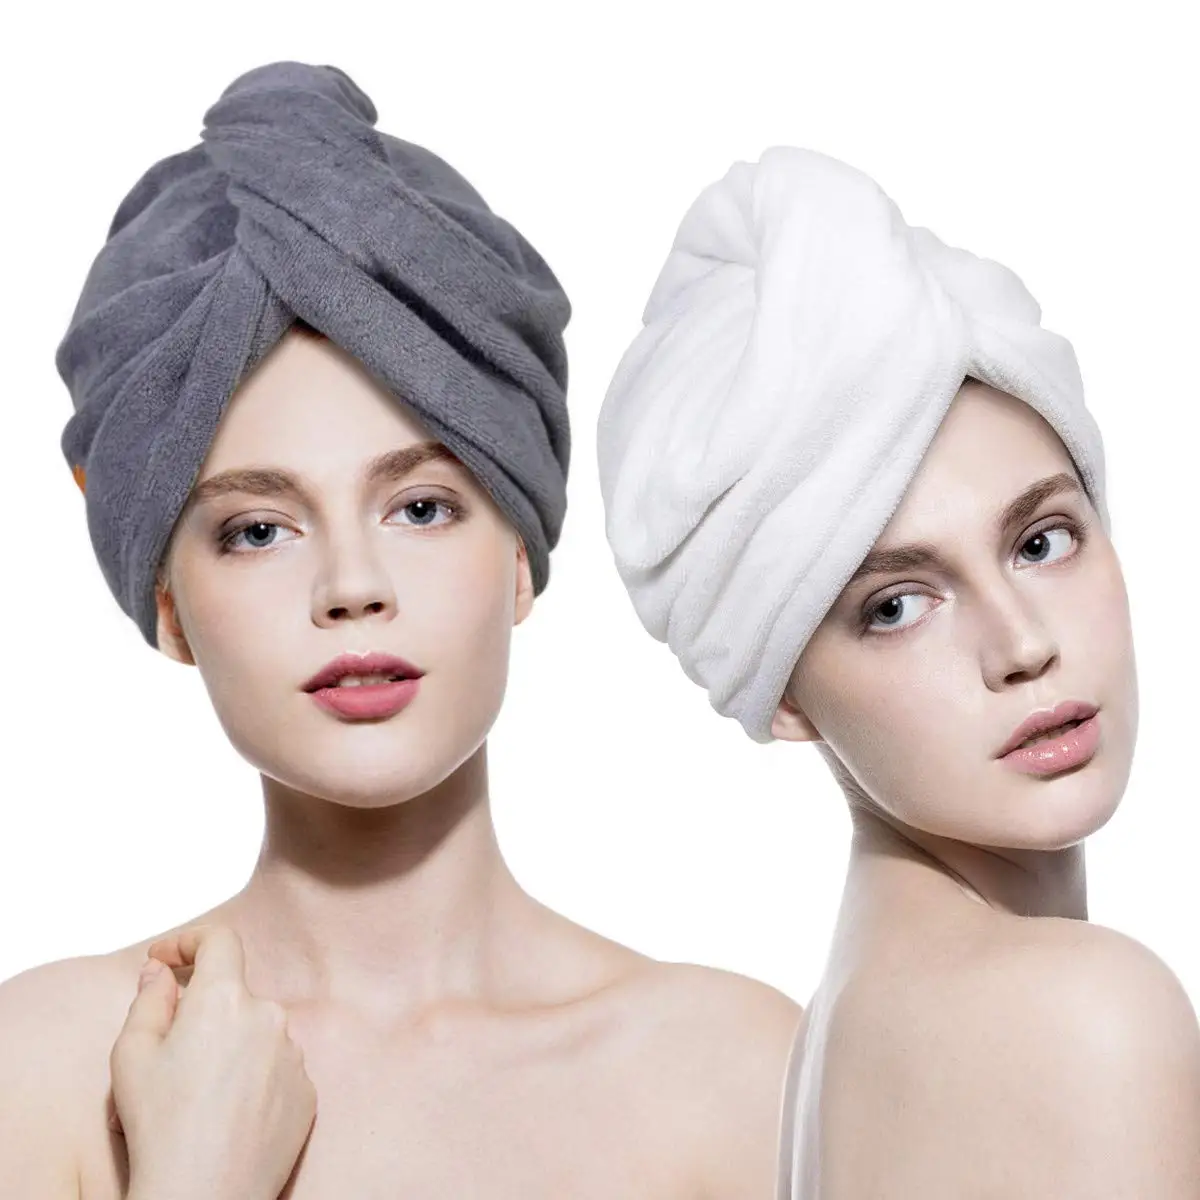 hair towel 11.jpg